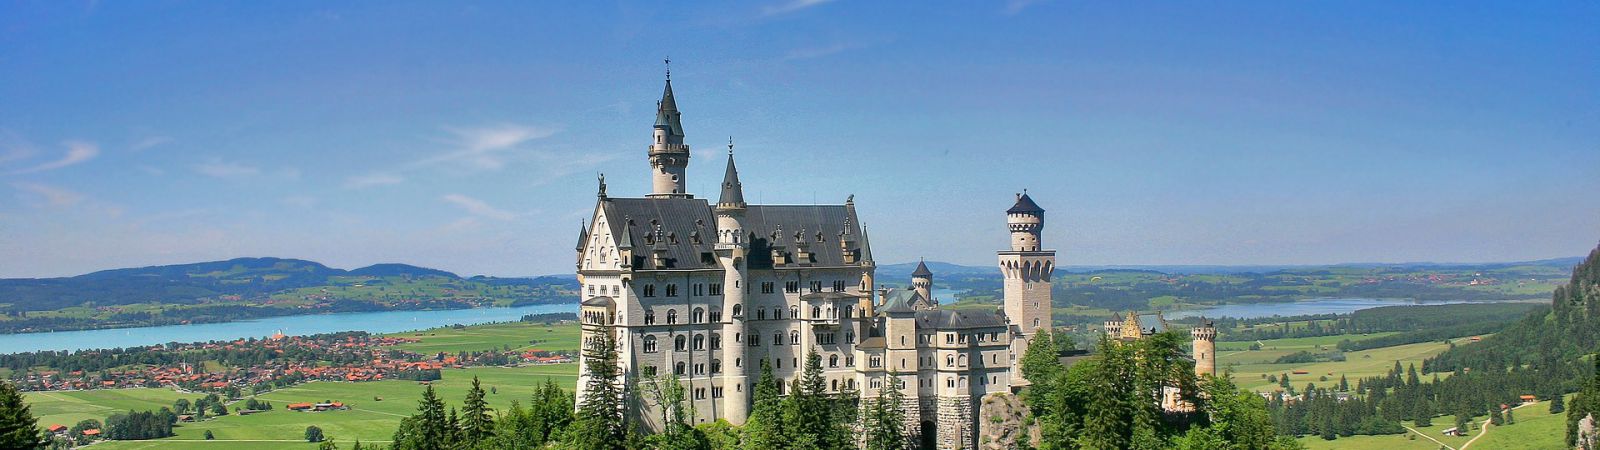 Beieren kasteel neuschwanstein